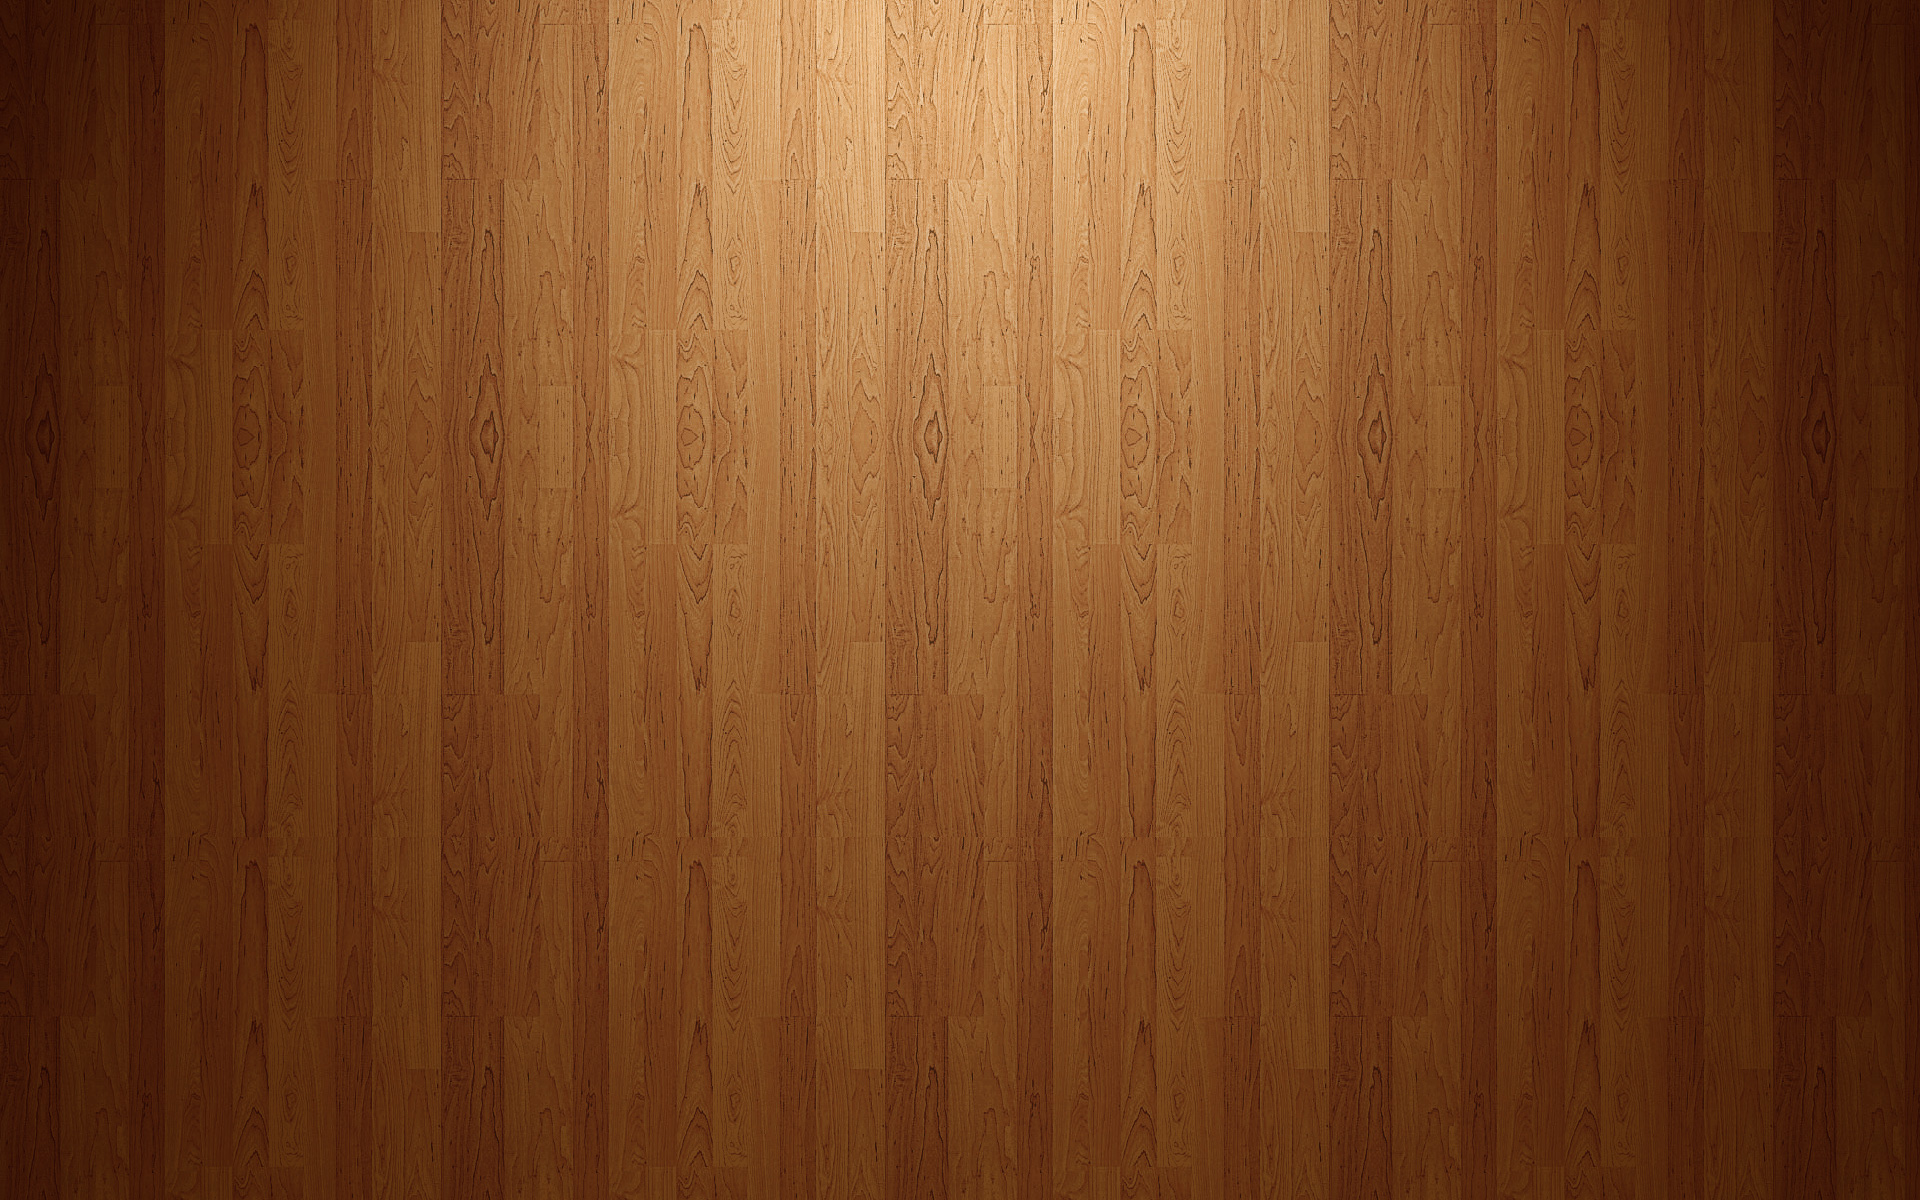 wood-floor-clean-style-6855.jpg